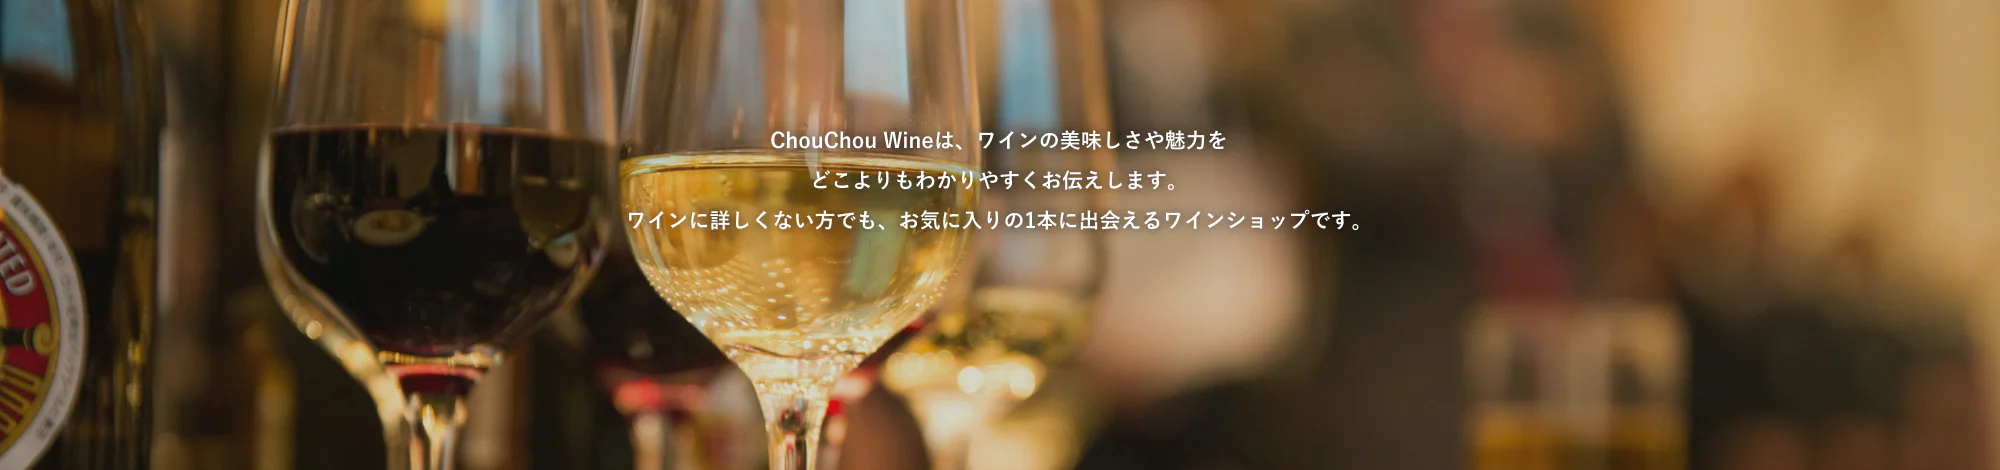 ChouChou Wineは、ワインの美味しさや魅力をどこよりもわかりやすくお伝えします。ワインに詳しくない方でも、お気に入りの1本に出会えるワインショップです。